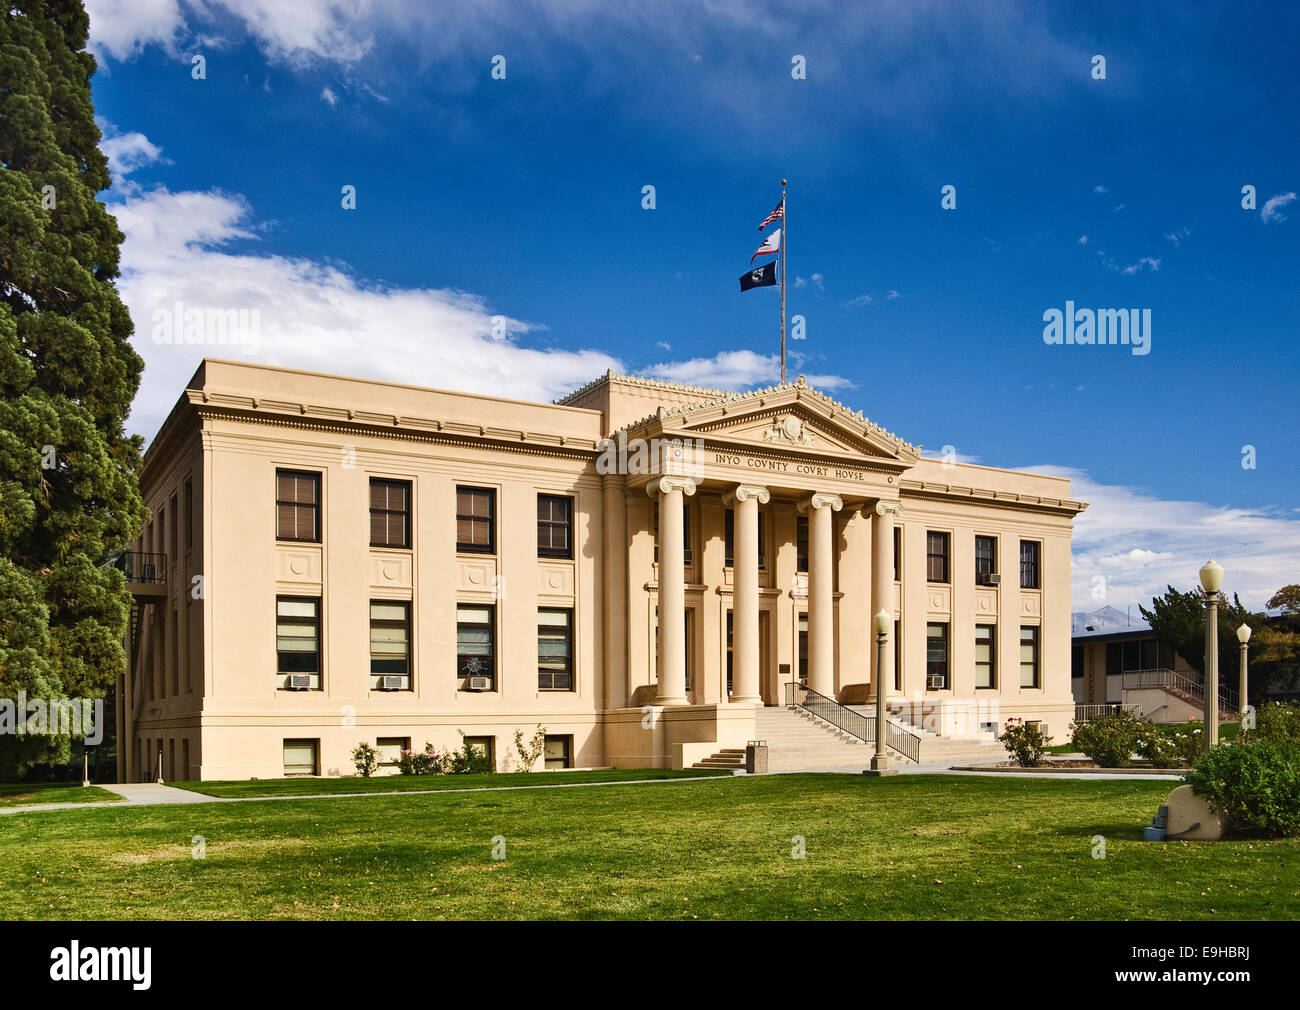 Inyo County Courthouse in der Stadt von Unabhängigkeit, Owens Valley, Kalifornien, USA Stockfoto